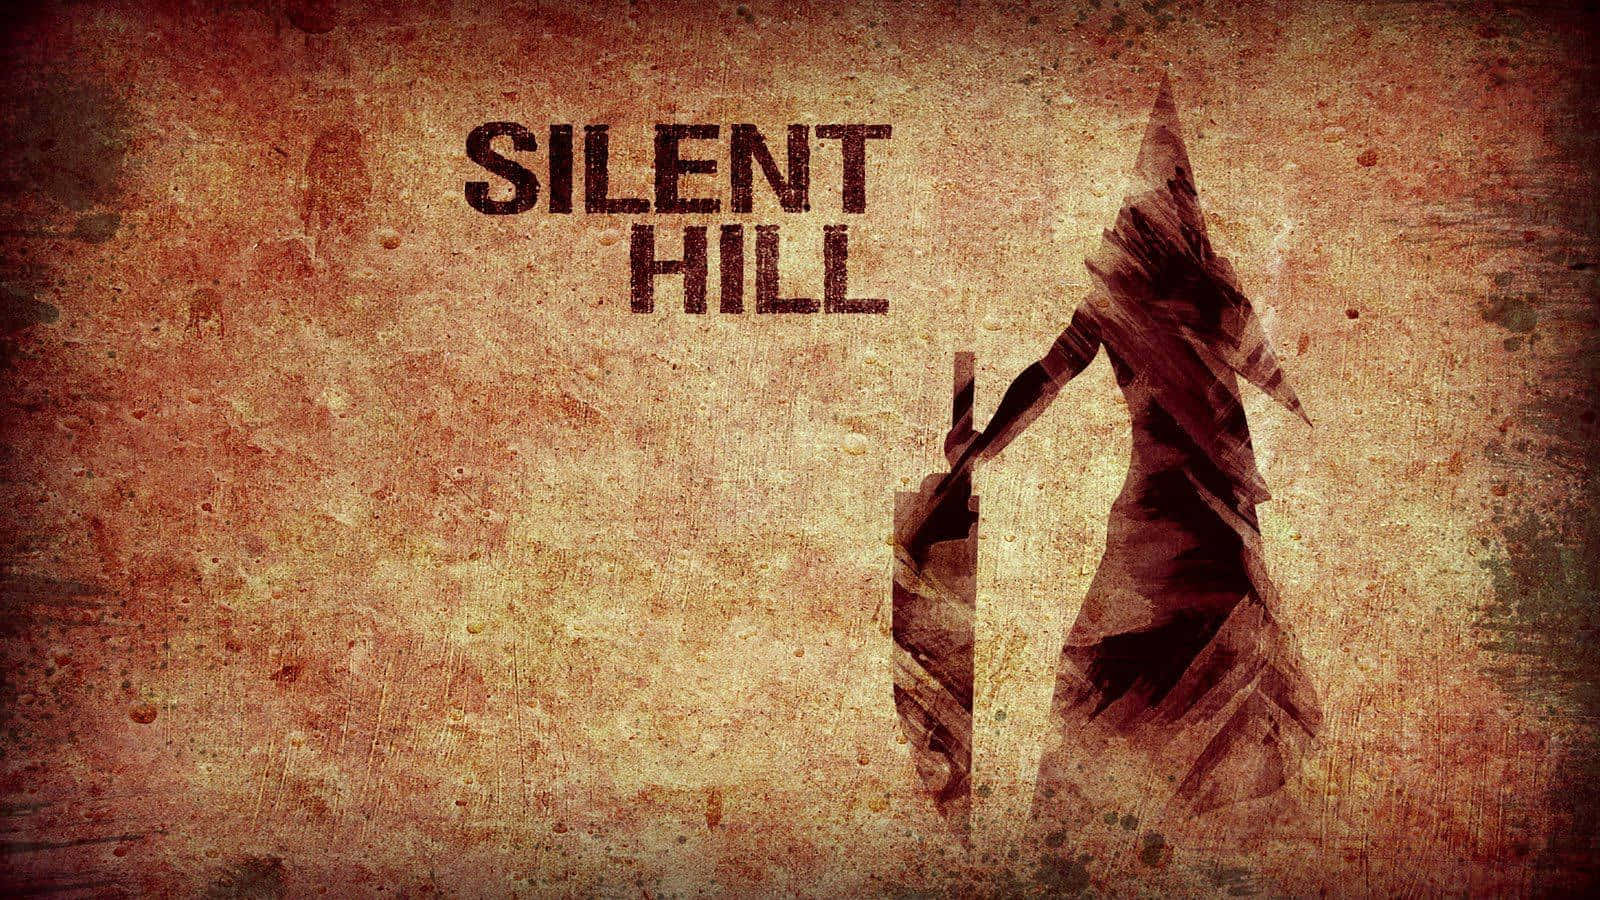 Bienvenidoa Silent Hill